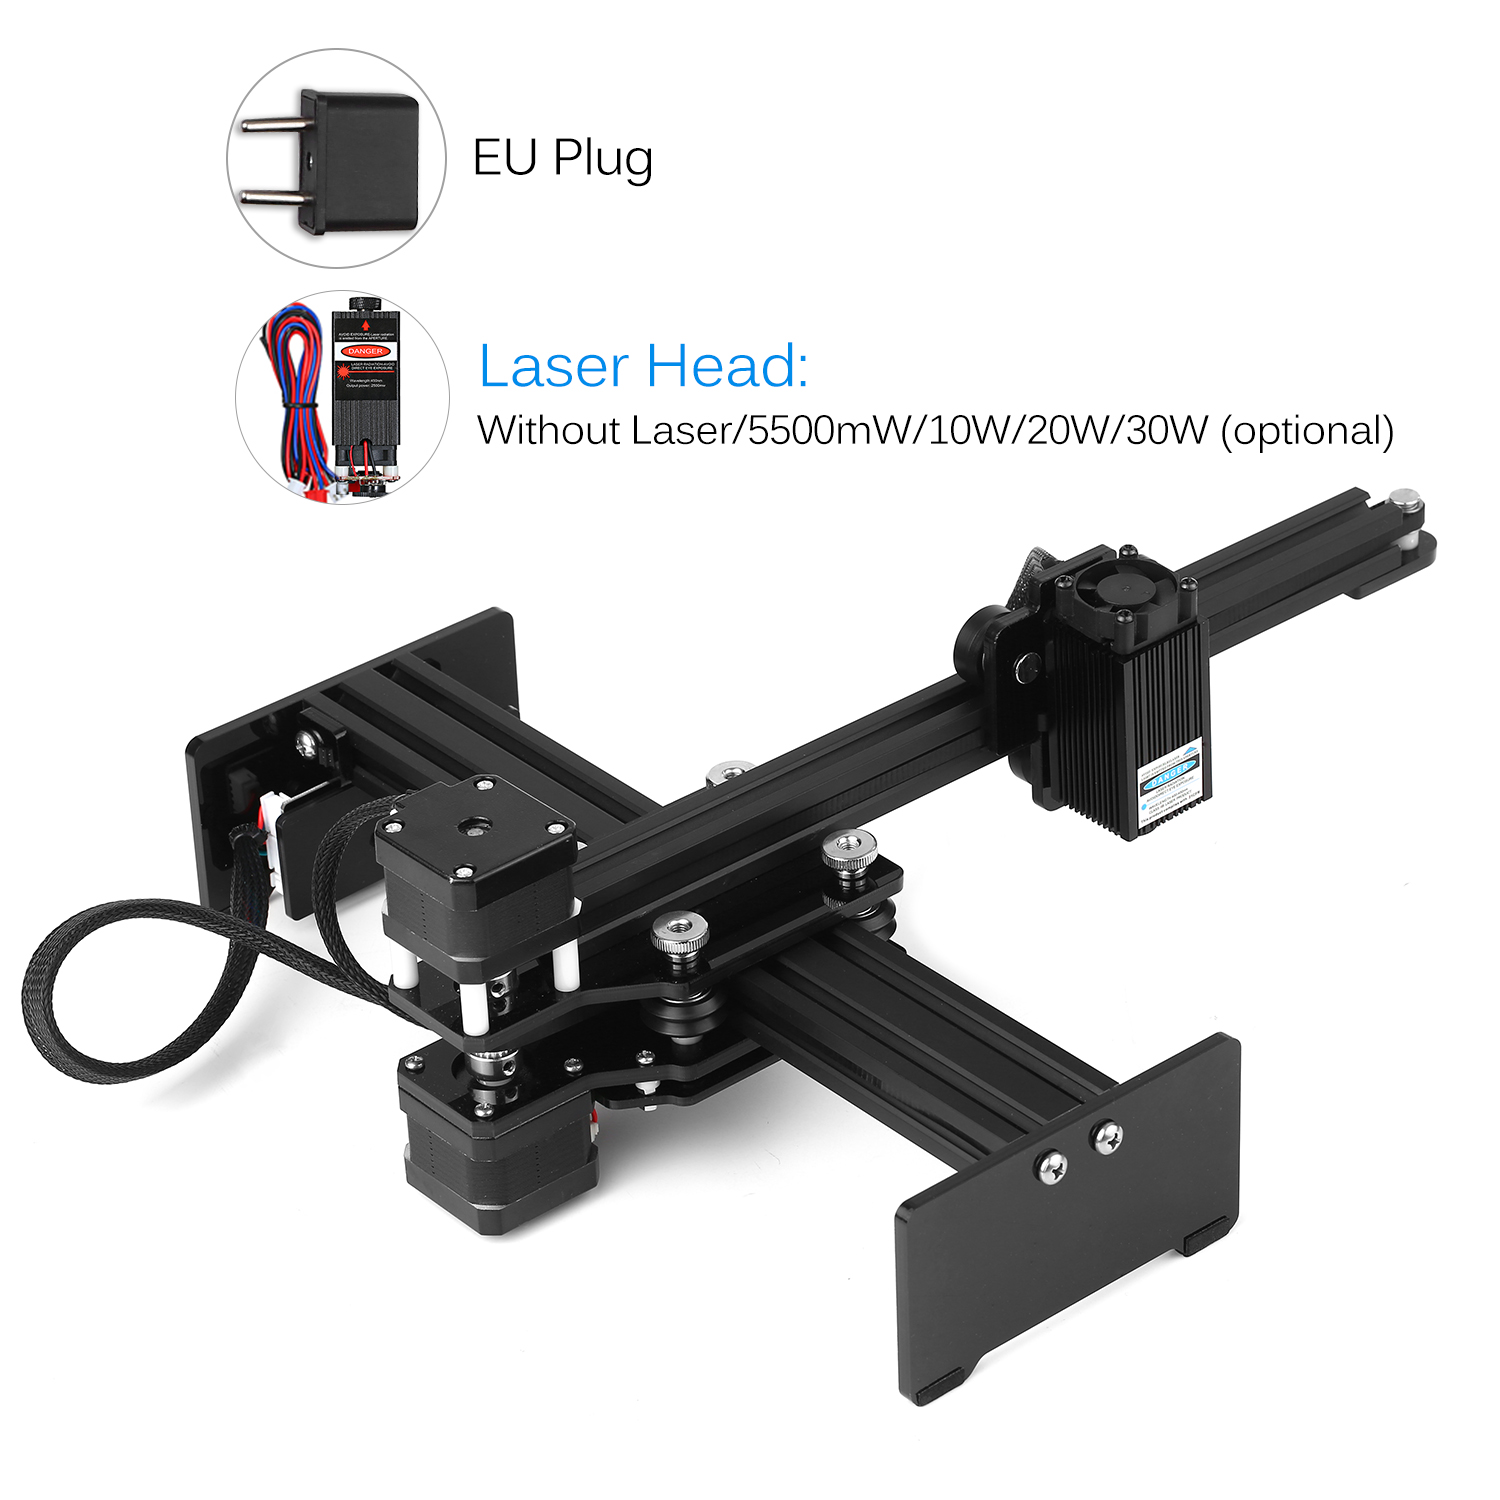 30w/20W/5500MW Laser Engraving Machine Mini Desktop Laser Engraver Printer Carver DIY Laser Logo Mark Printer CNC machine tool